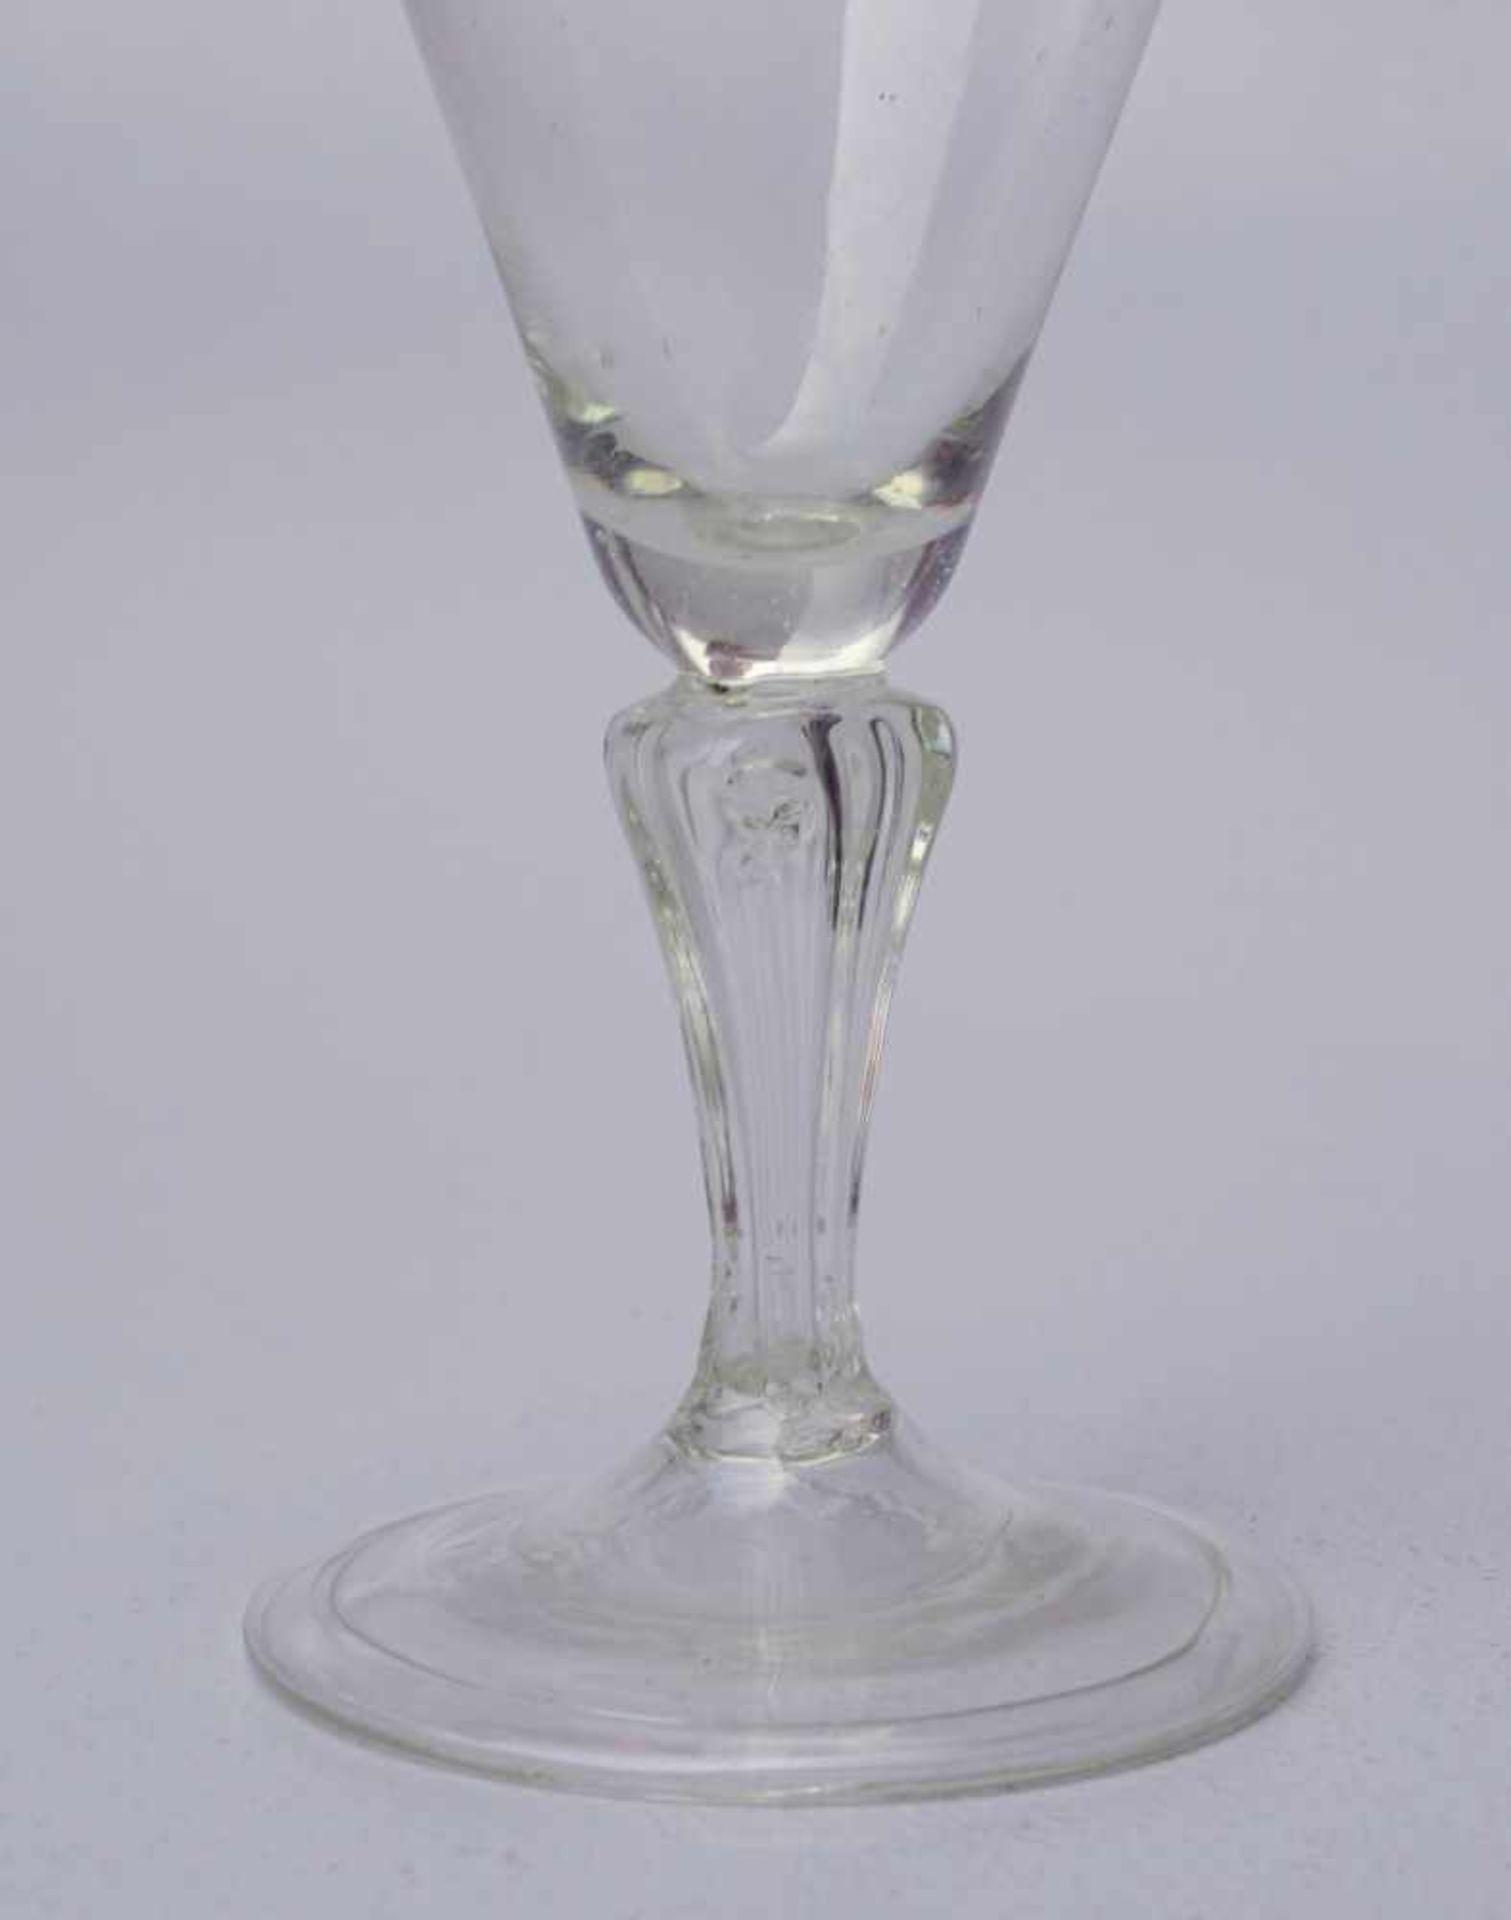 Seltenes Trichterglas des 18. Jhd.Farbloses Glas, geblasen, breiter Fuß mit umgelegtem Standring, - Bild 2 aus 3